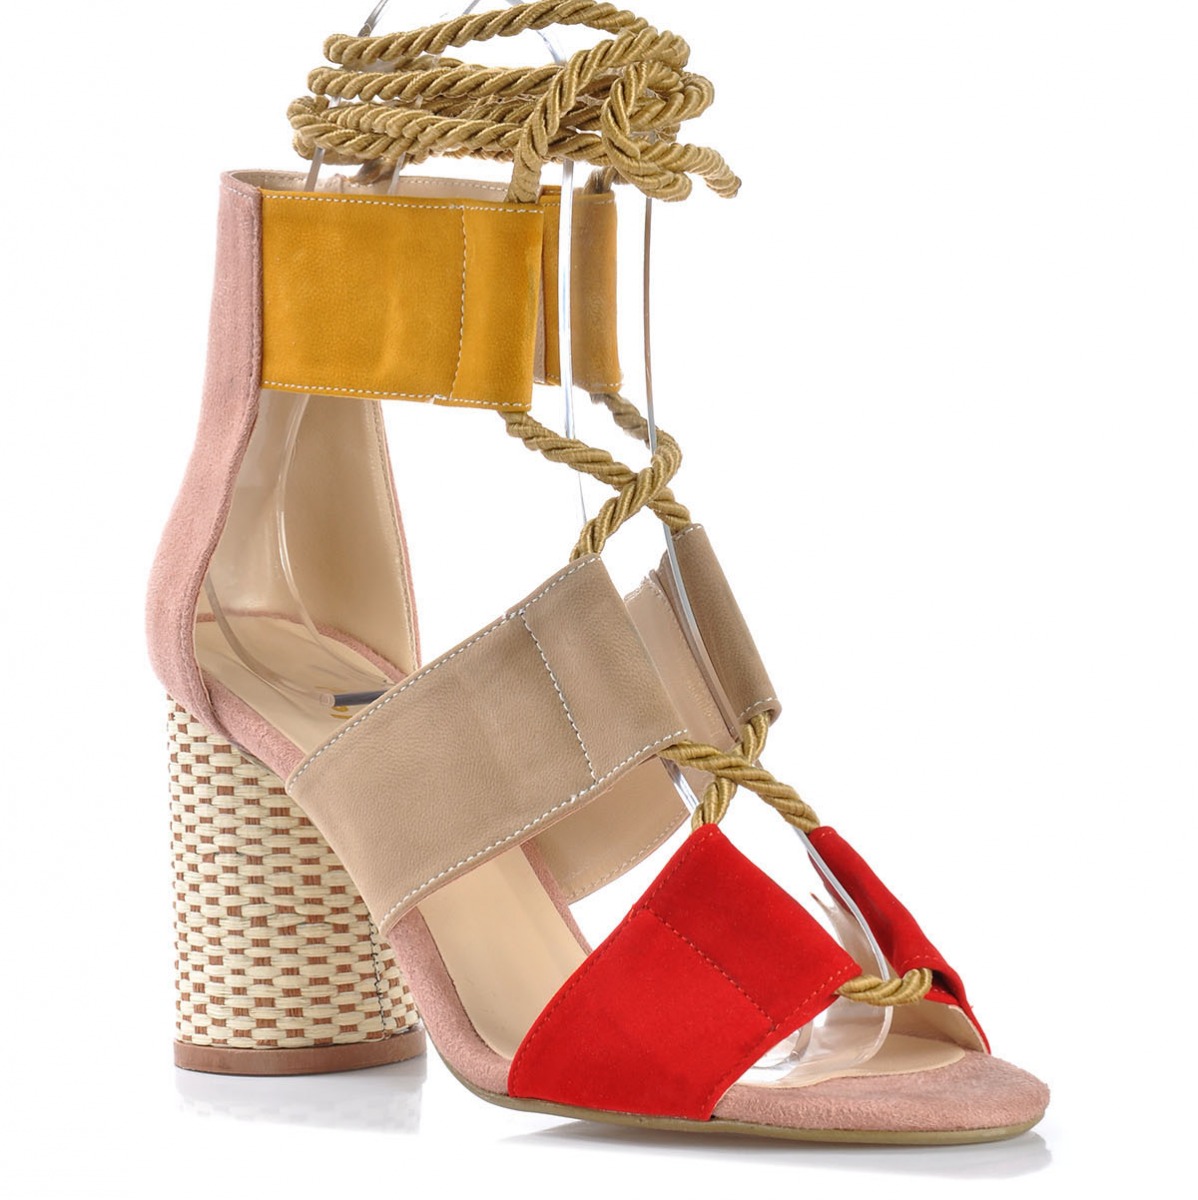 Flo Kadın  Kırmızı-Süet Klasik Topuklu Ayakkabı VZN-191Y. 2